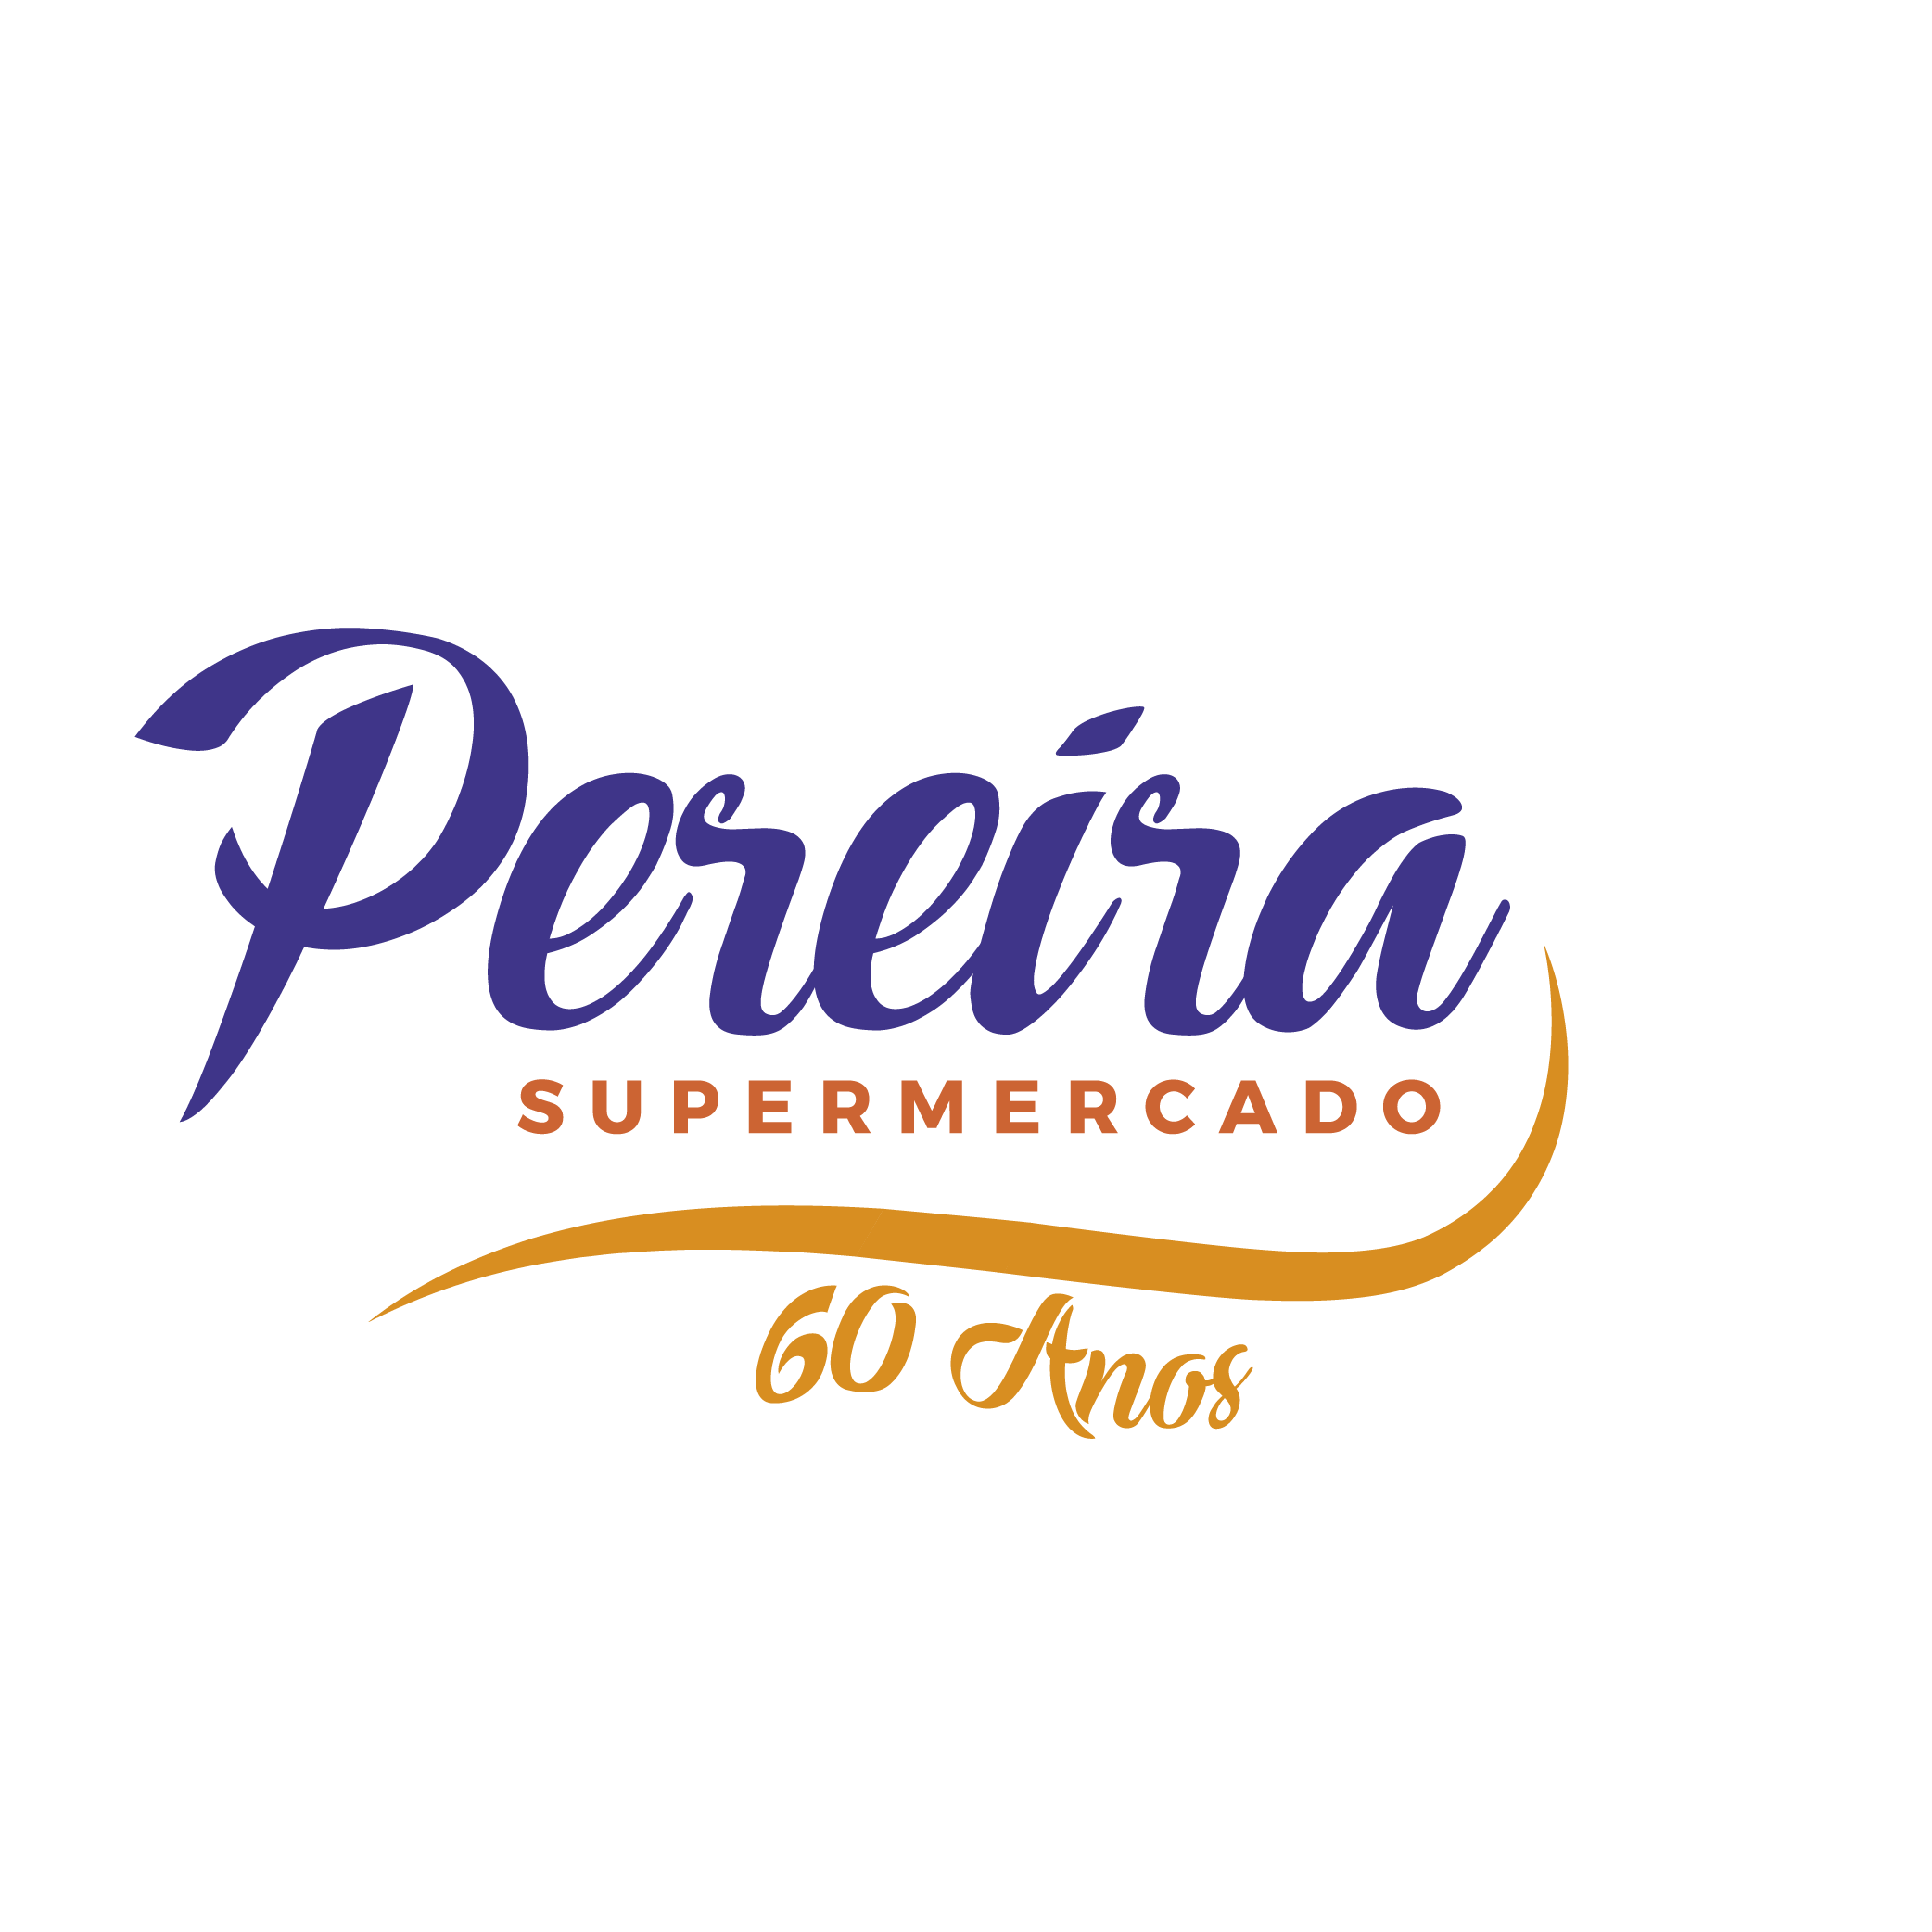 Supermercado Pereira